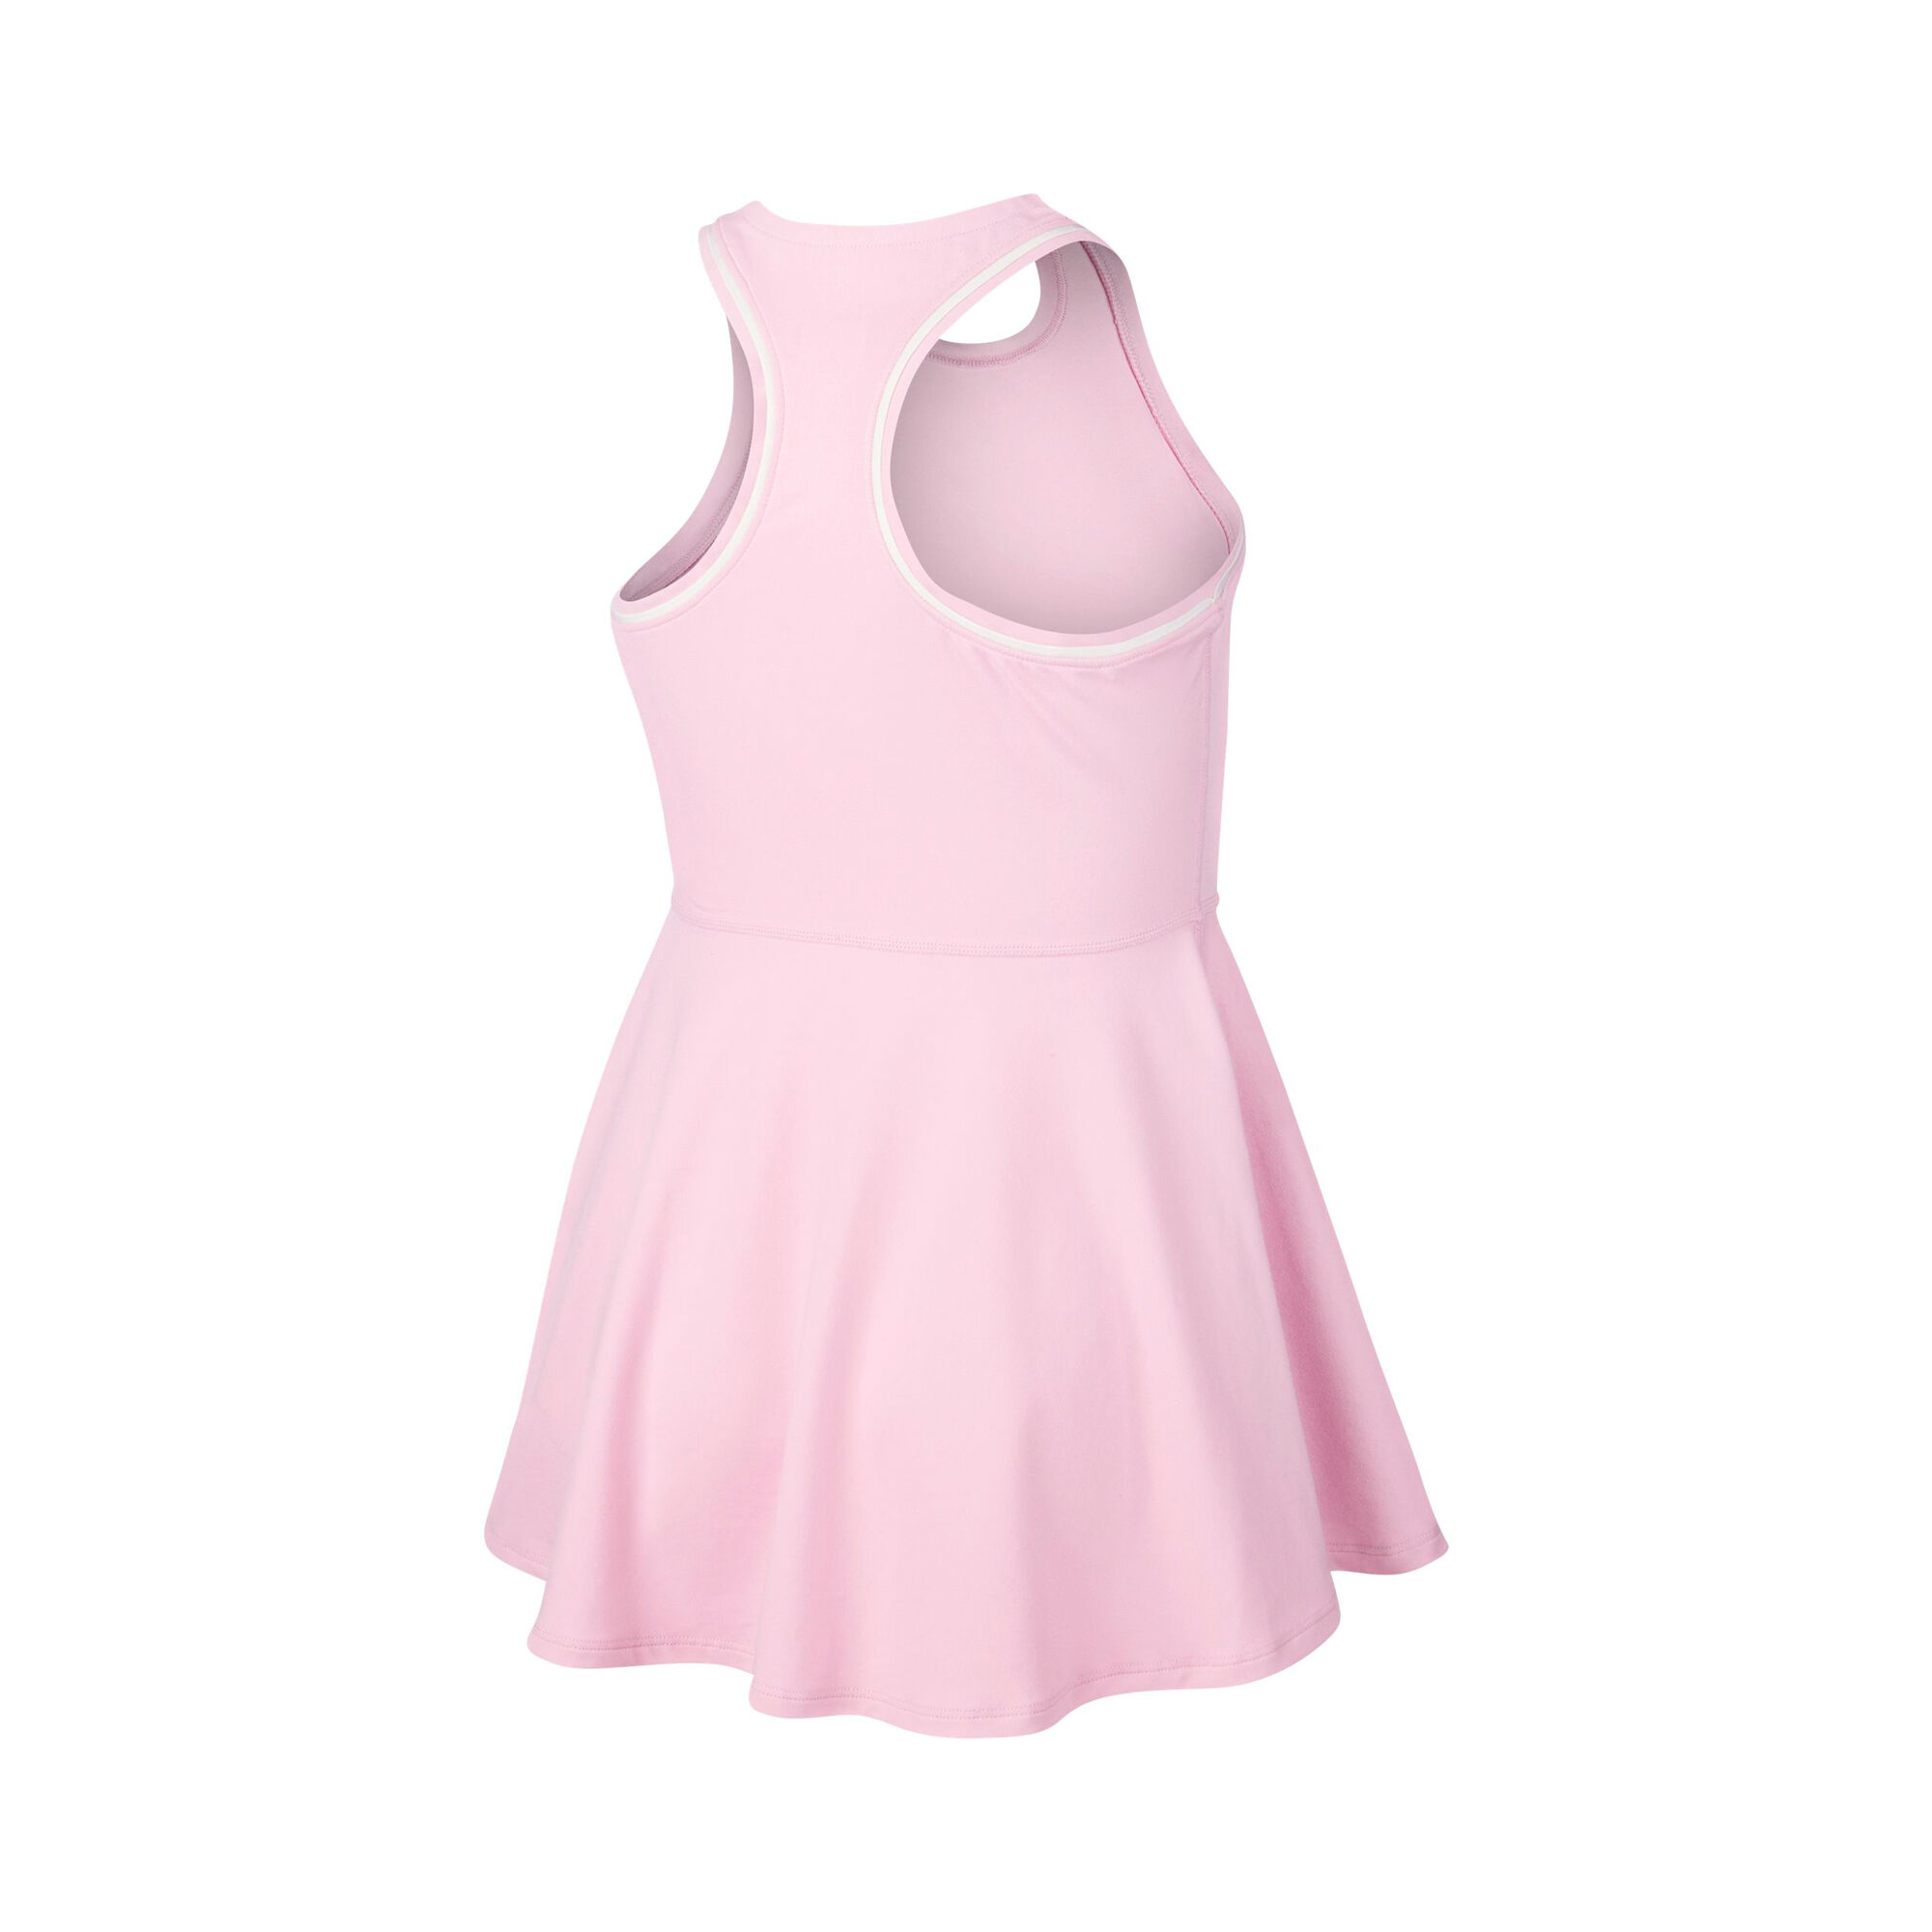 Nike Court Dry Kleid Mädchen - Rosa, Weiß online kaufen ...